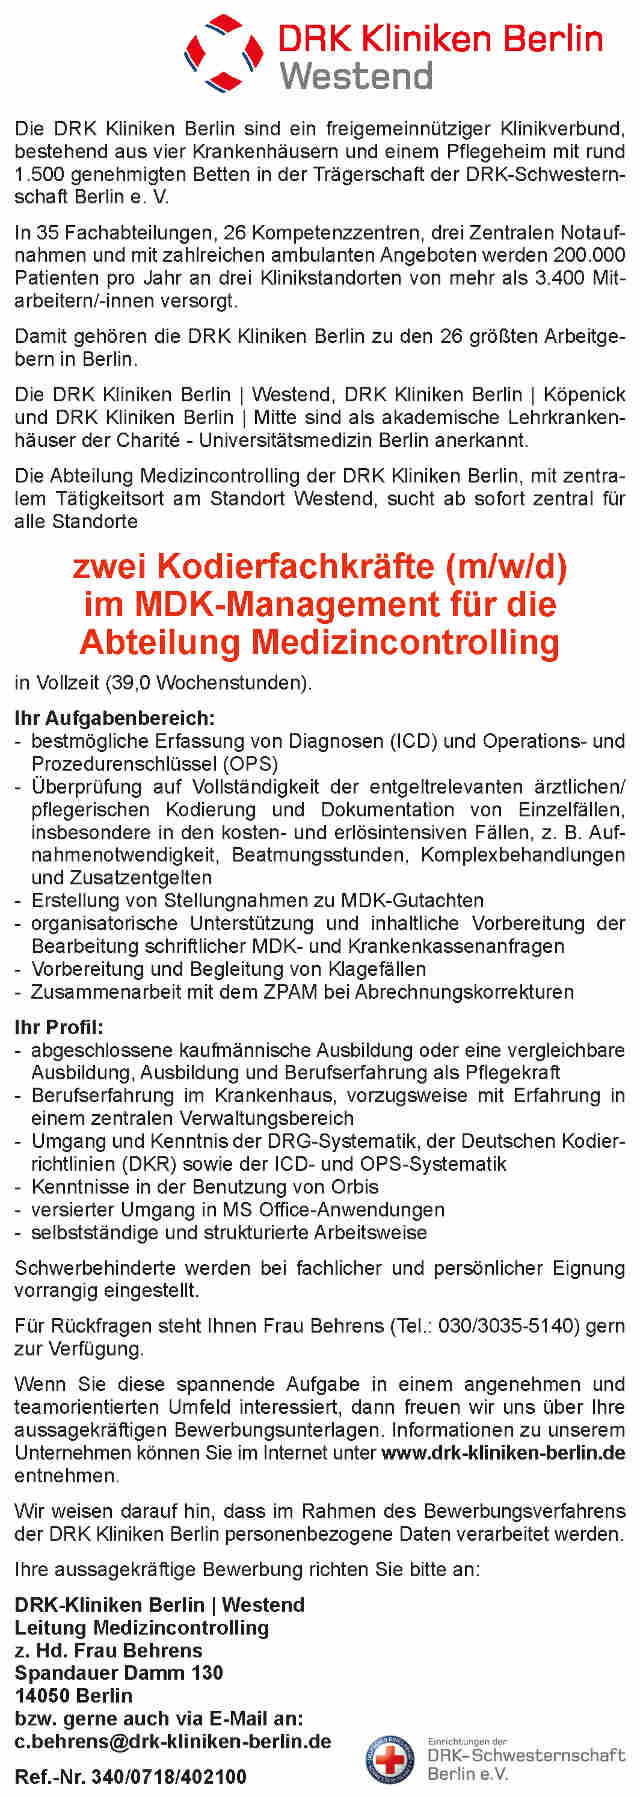 DRK Kliniken Berlin: Kodierfachkräfte (m/w/d)